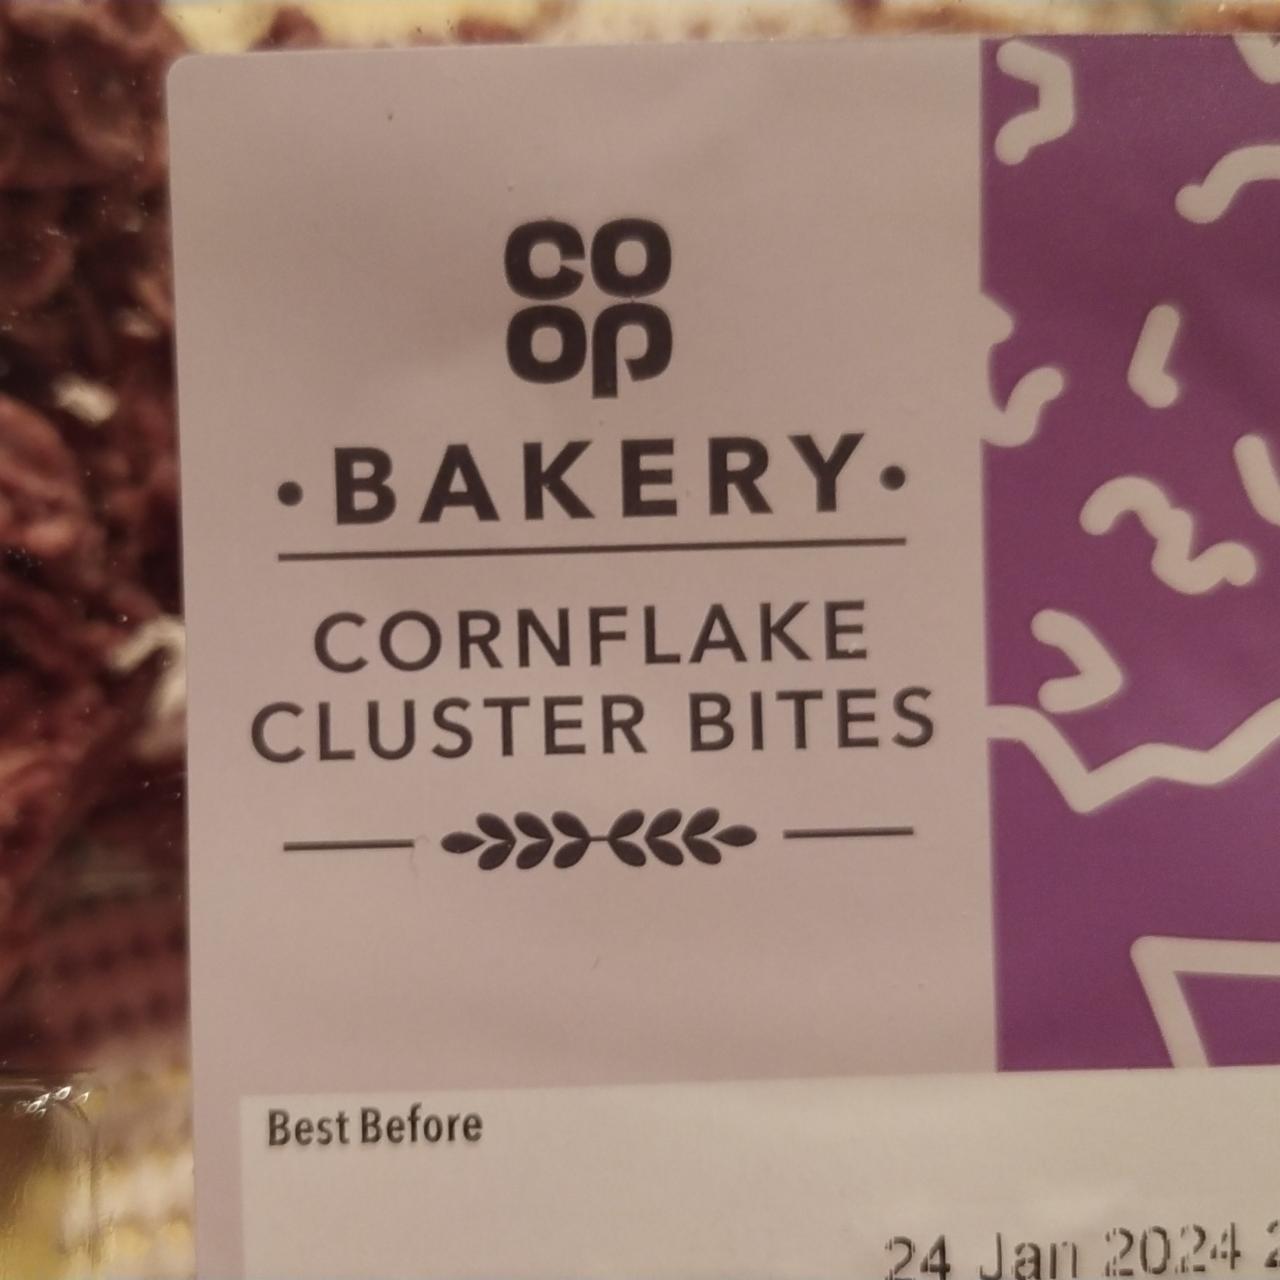 Fotografie - cornflake cluster bites COOP Bakery.